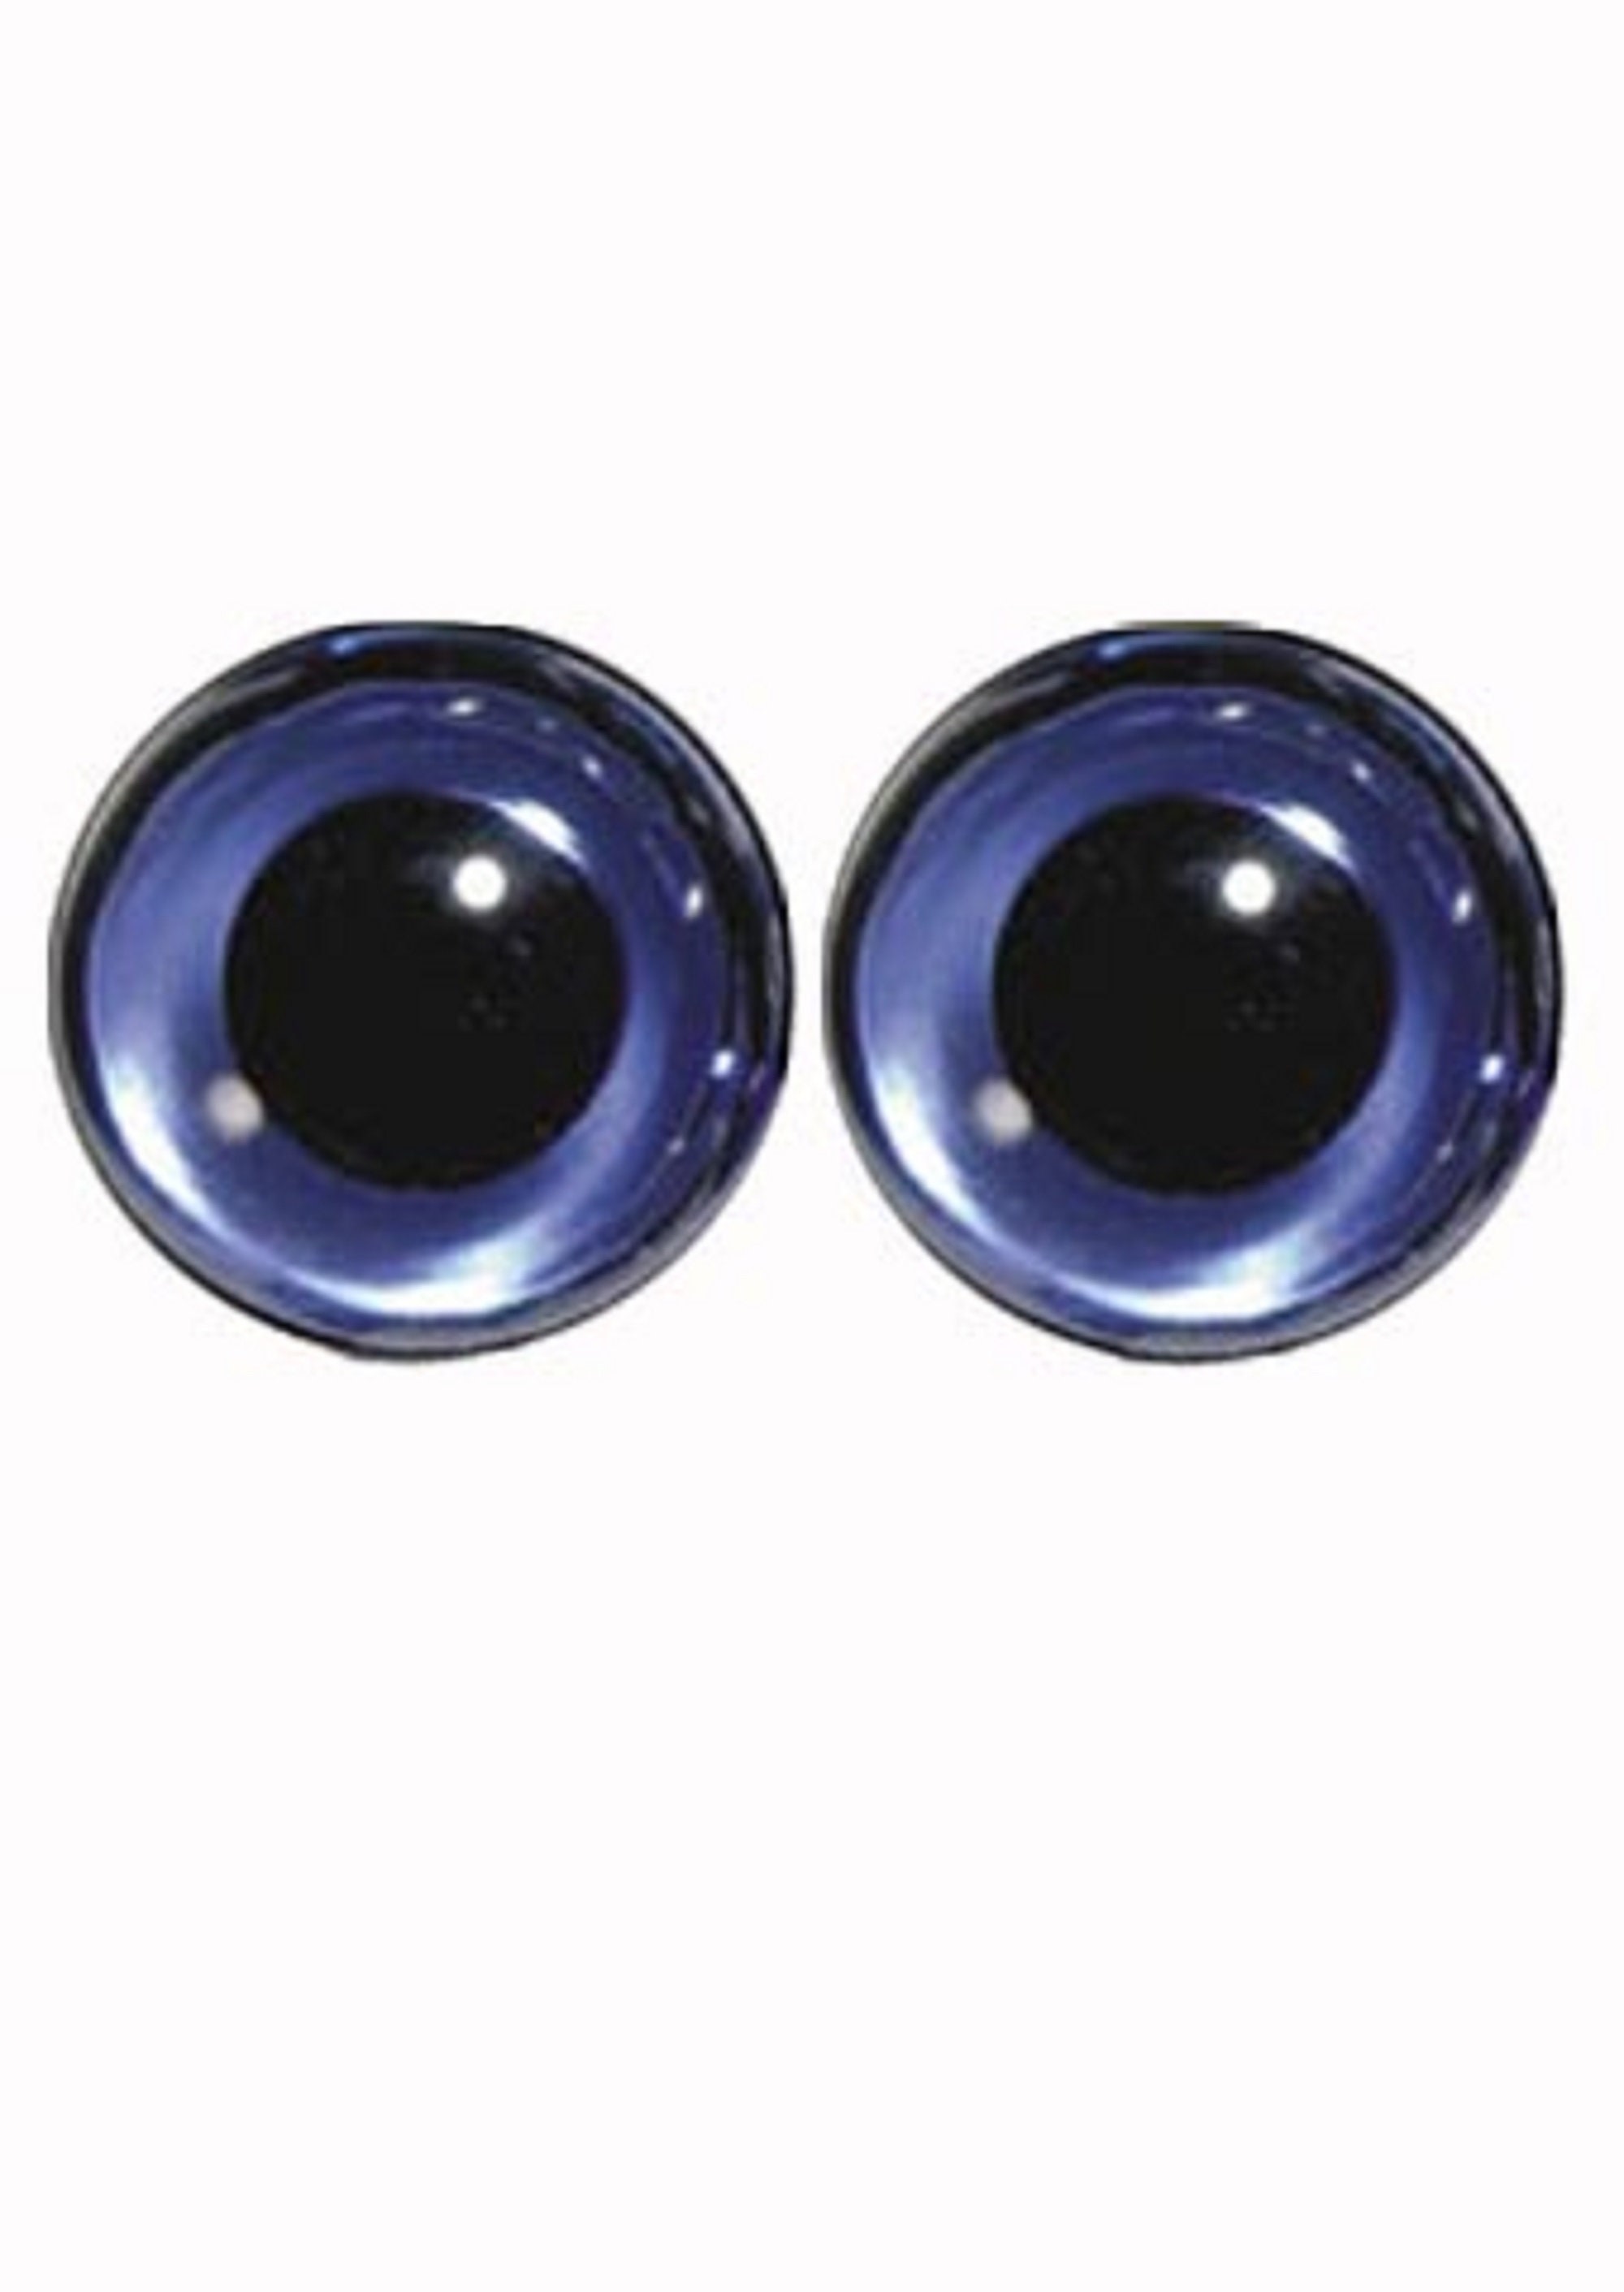 Toy safety eyes High quality multi use black 9mm, 10mm, 11mm, 12mm or mixed  - dolls eyes - black toy eyes animal eyes - needle felting eyes